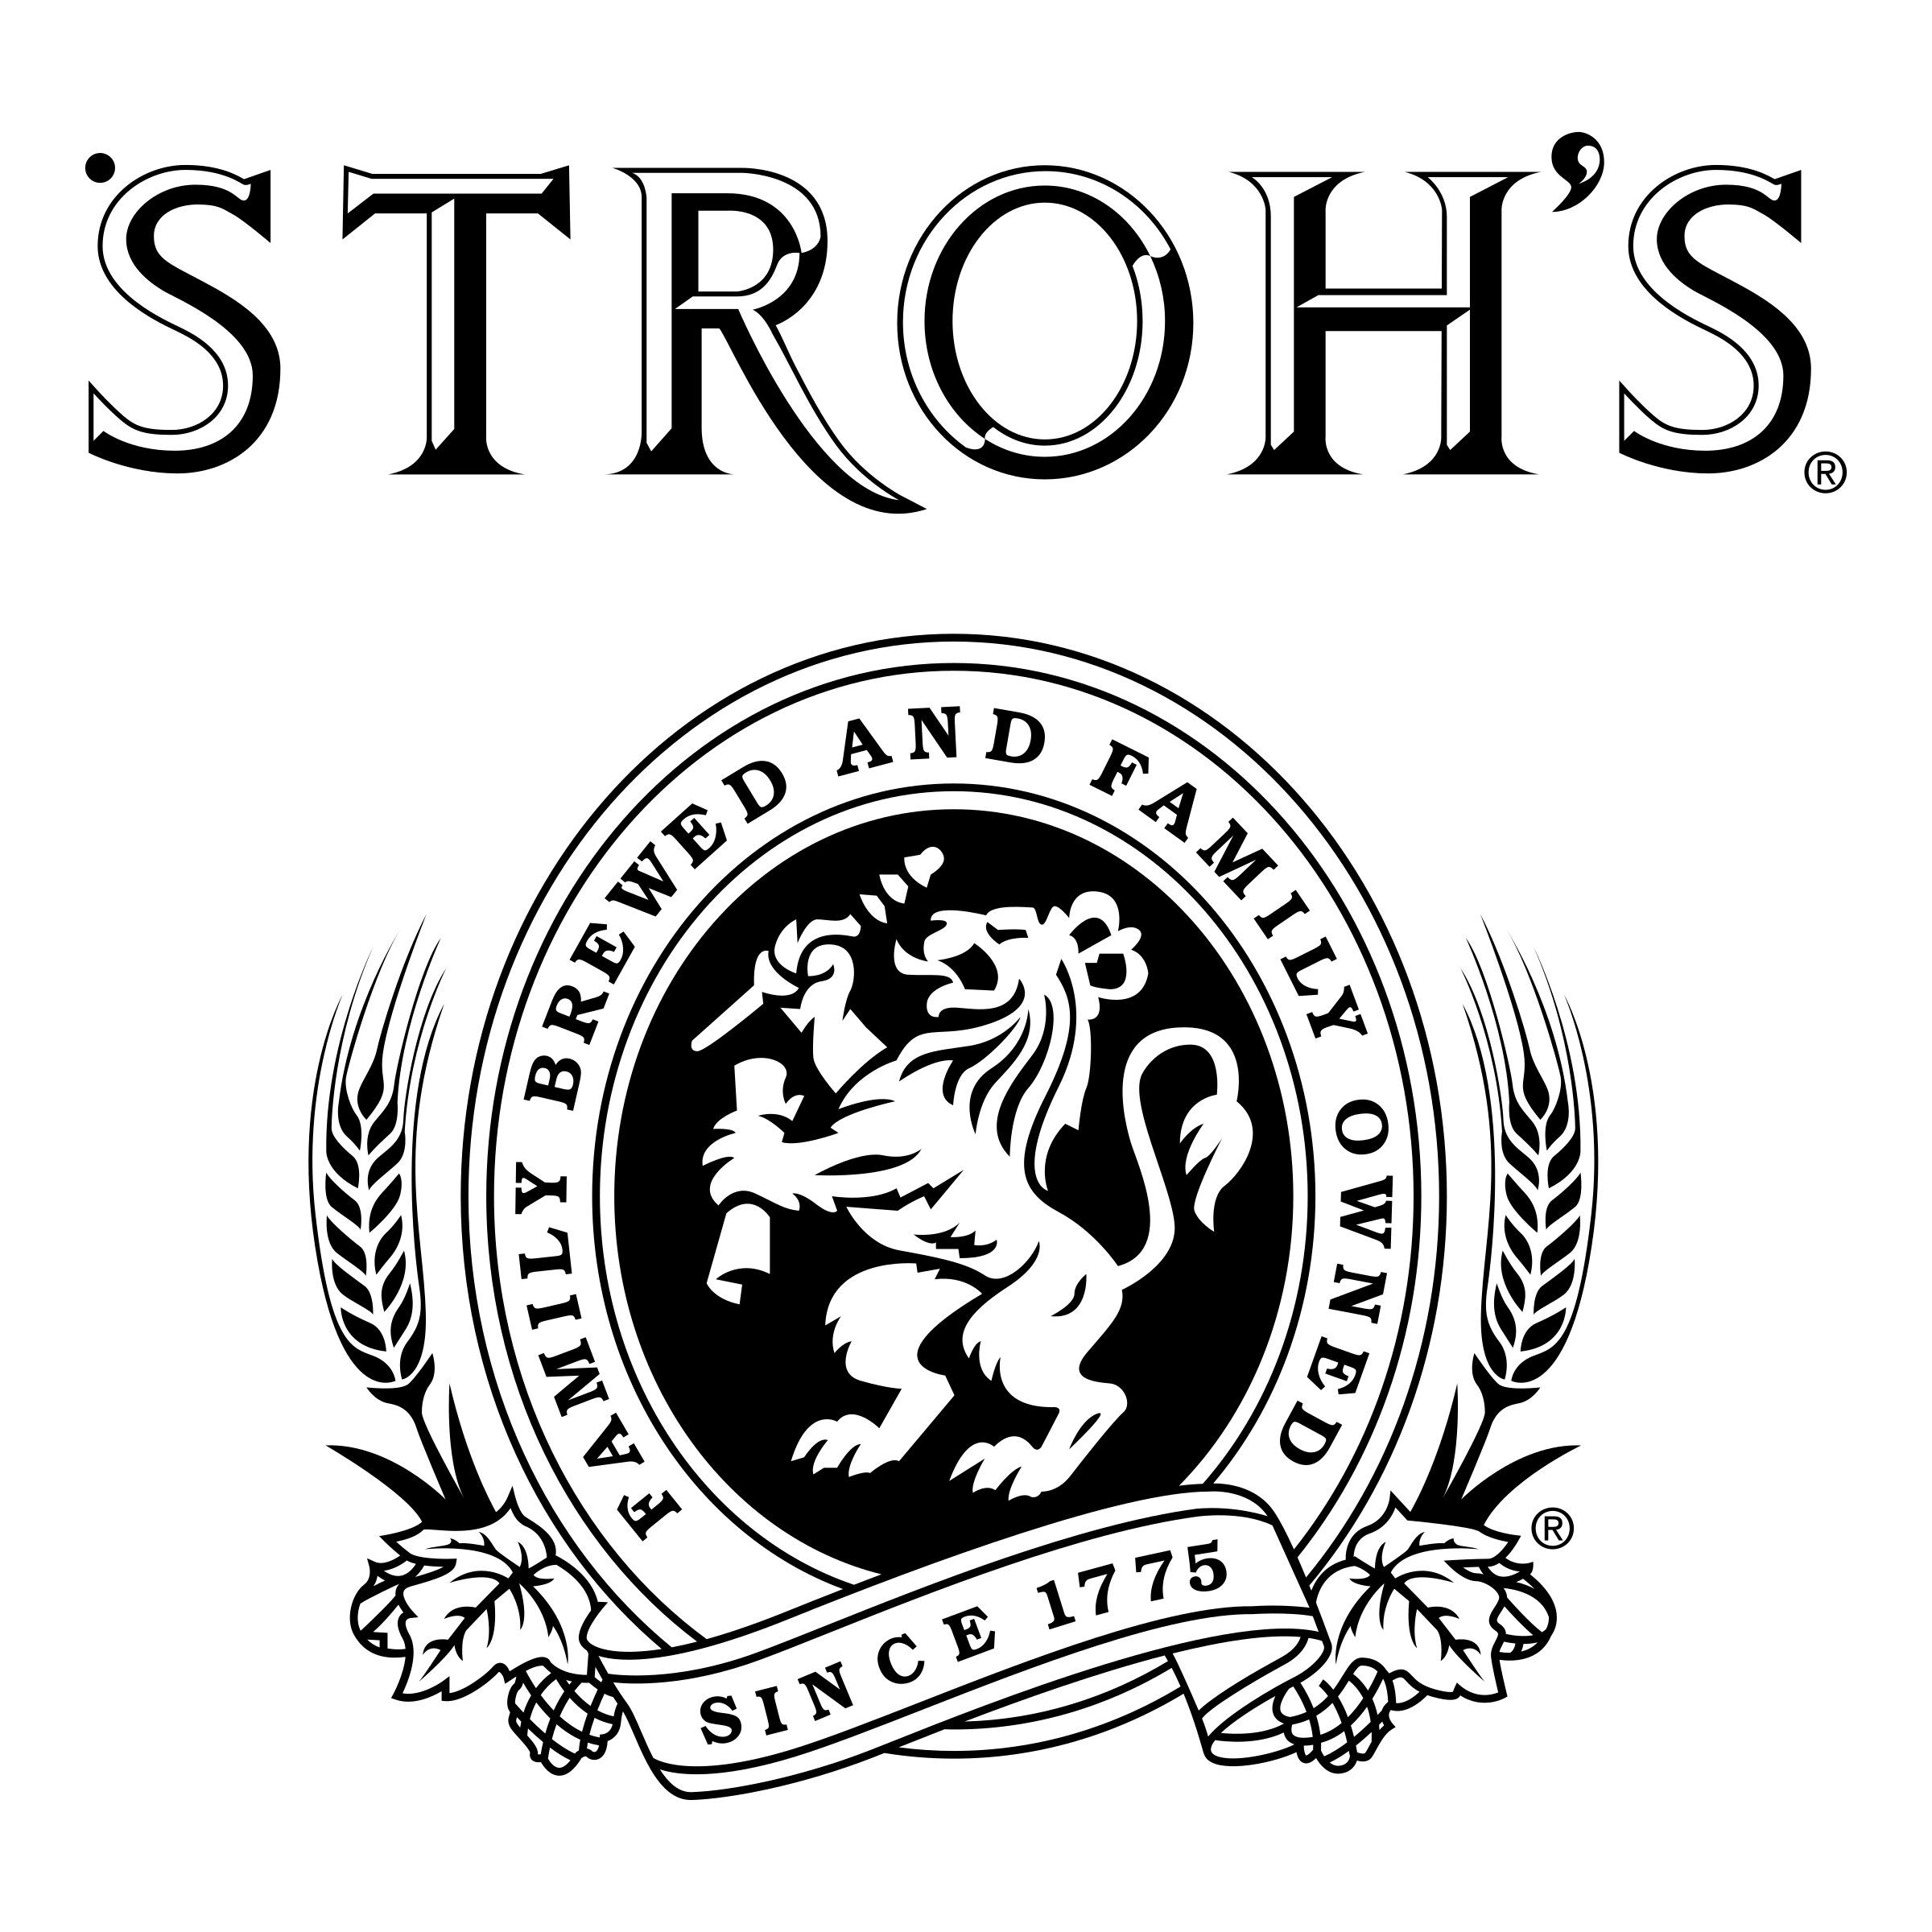 Strohs Logo - Stroh's Logo PNG Transparent & SVG Vector